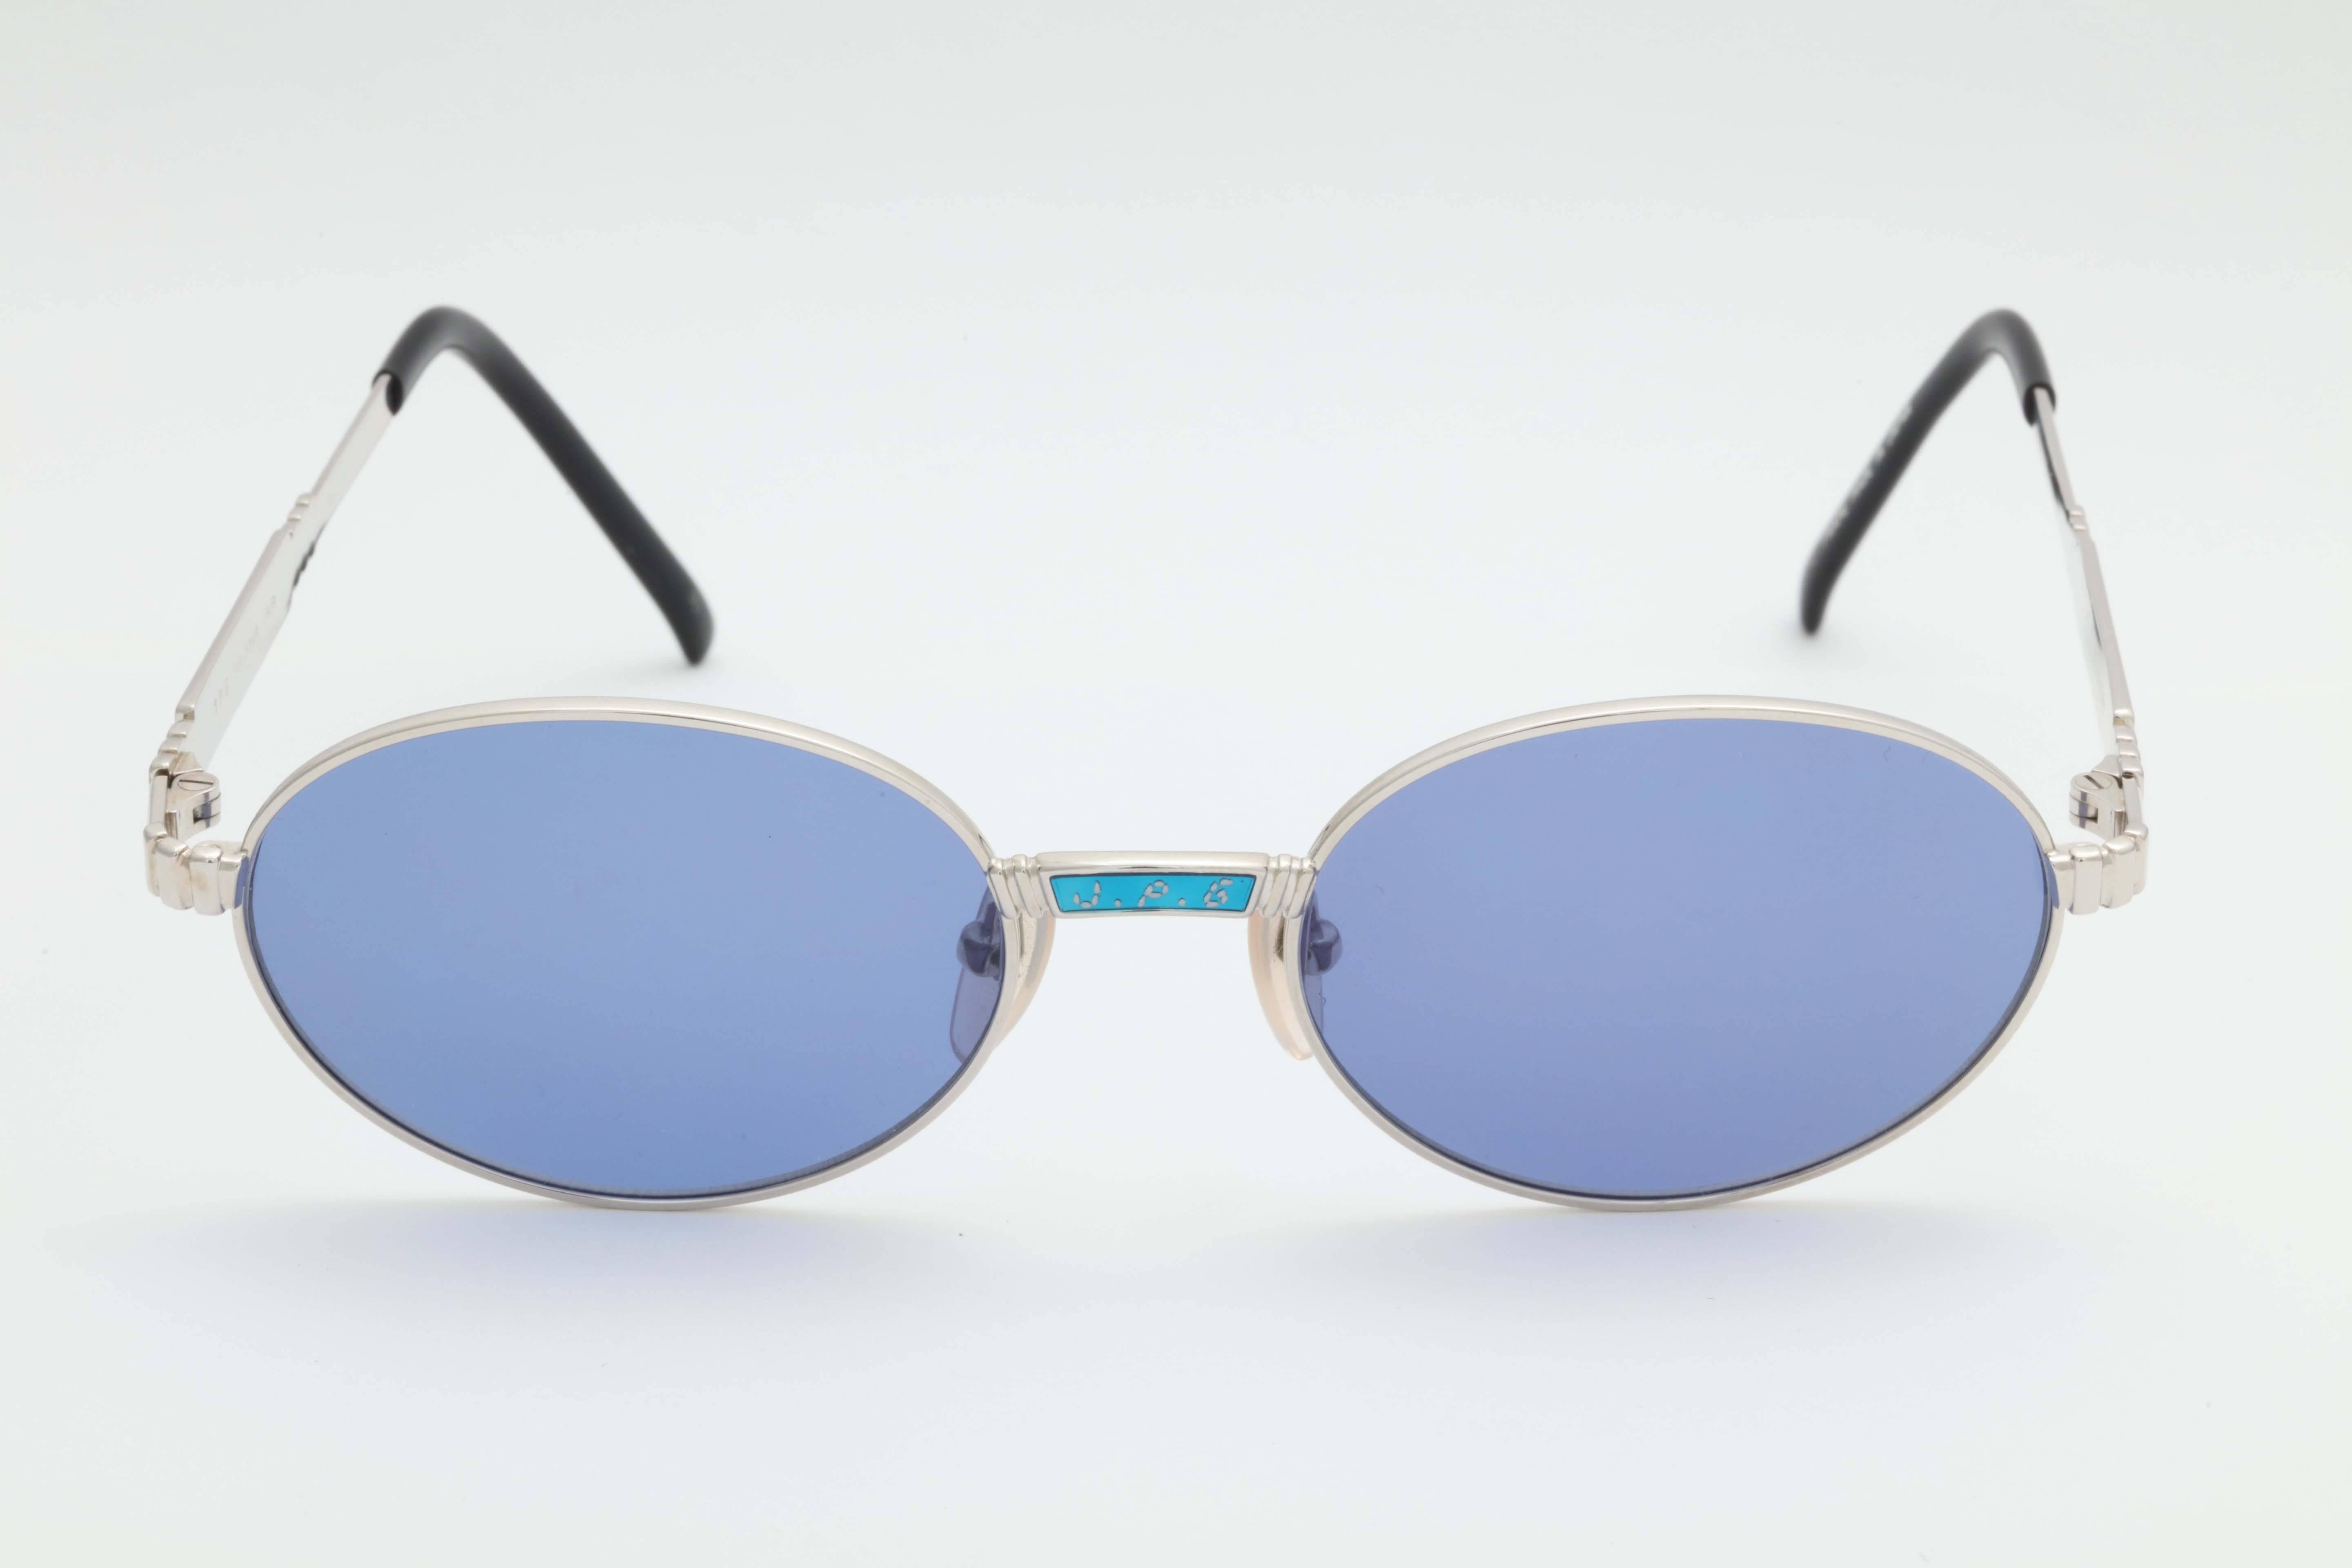 Men's Jean Paul Gaultier 58-5104 Vintage Sunglasses For Sale